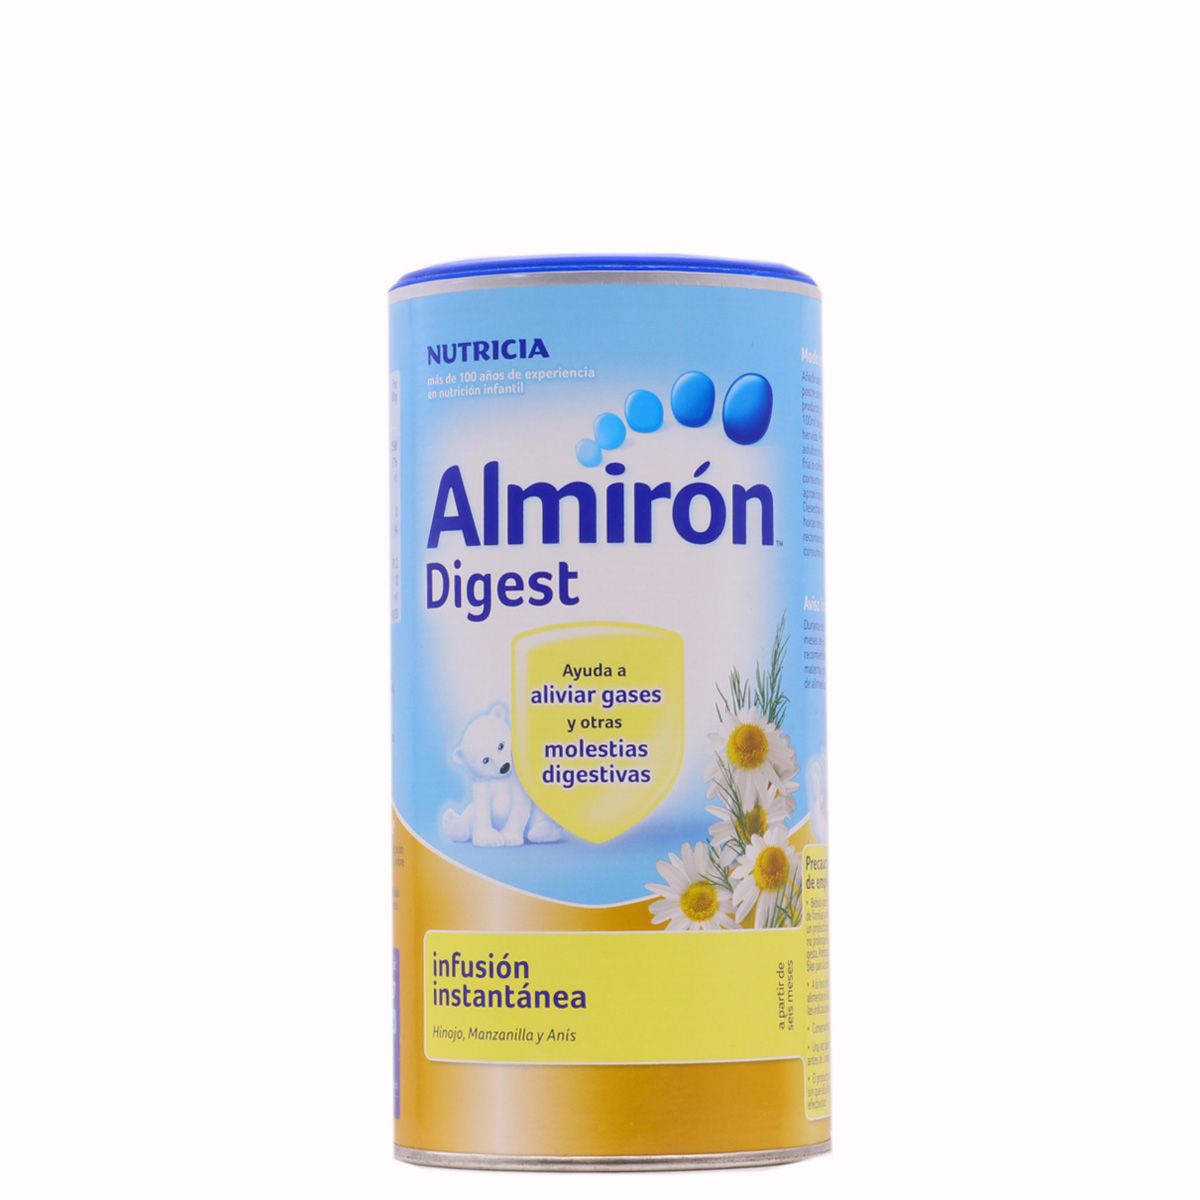 Almirón Digest Infusión Instantánea 200g para el bebé y toda la familia